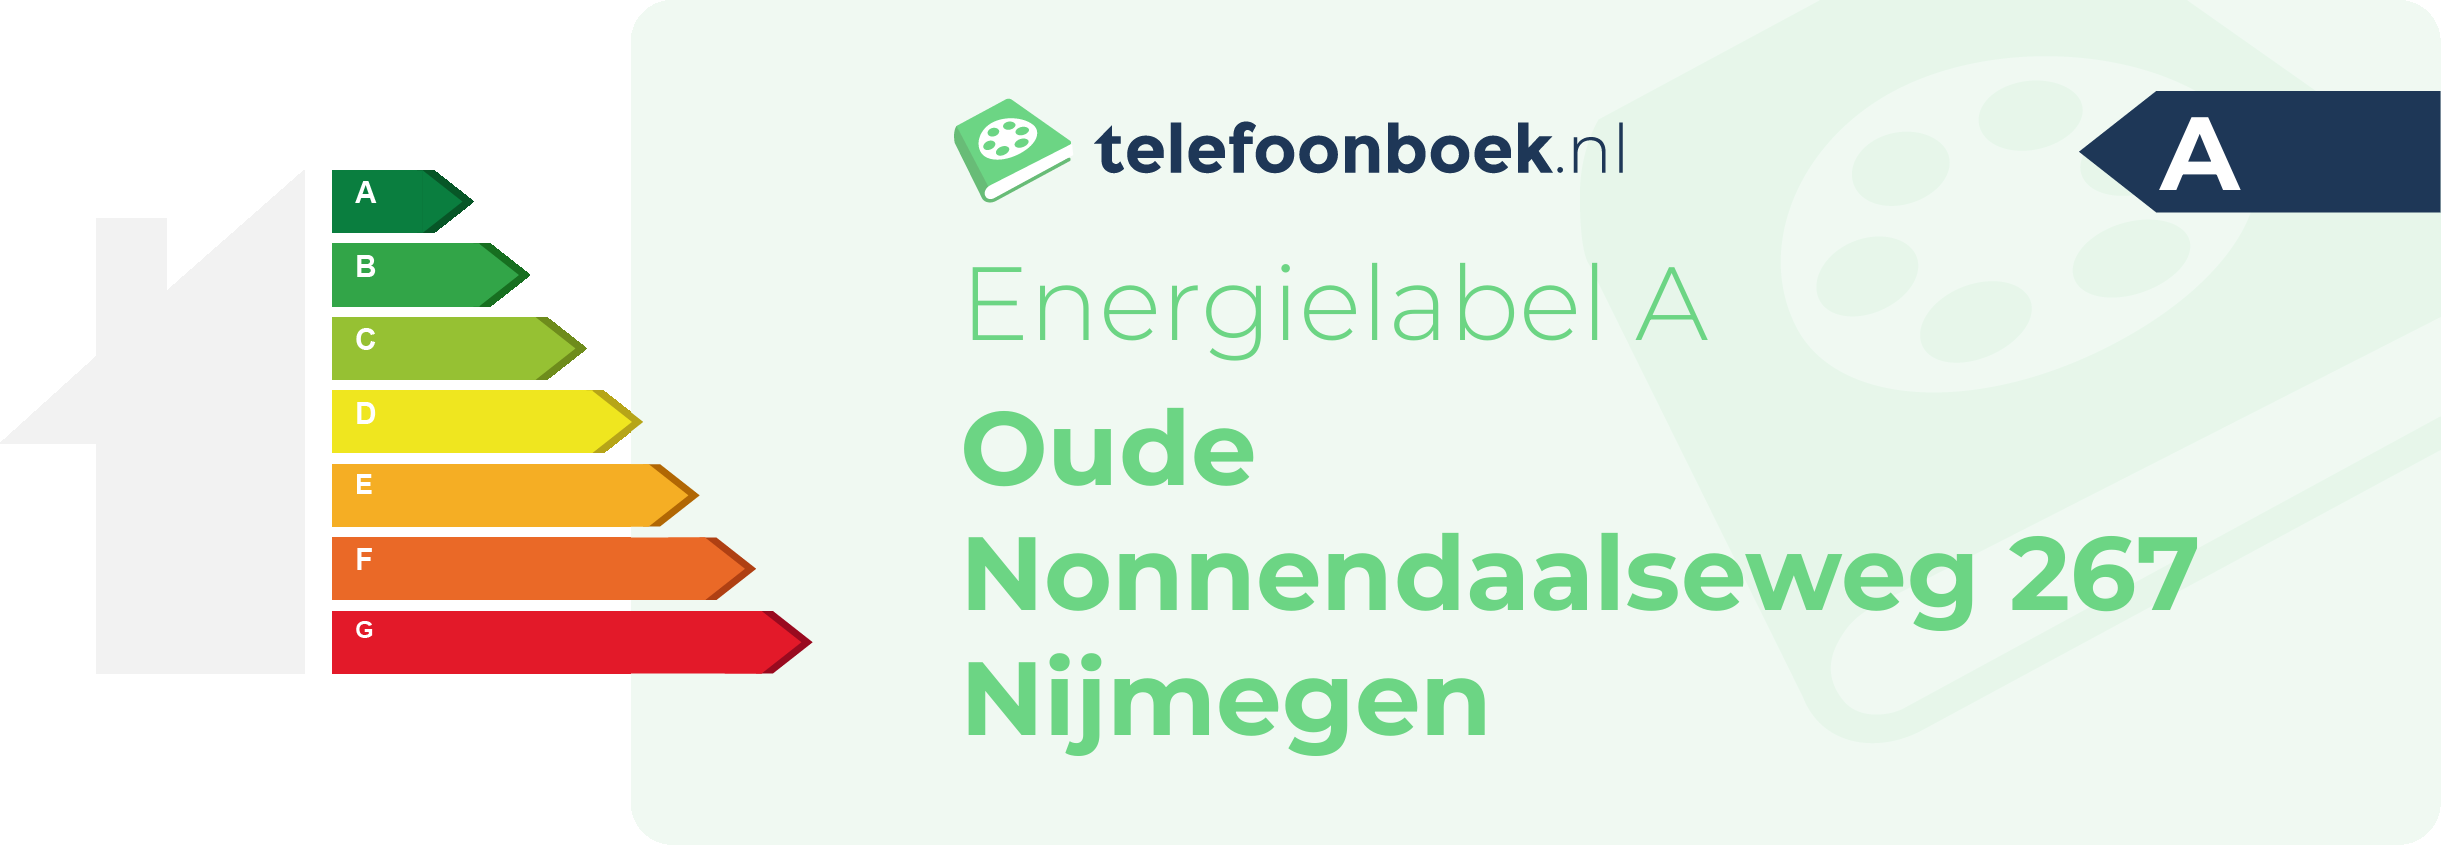 Energielabel Oude Nonnendaalseweg 267 Nijmegen